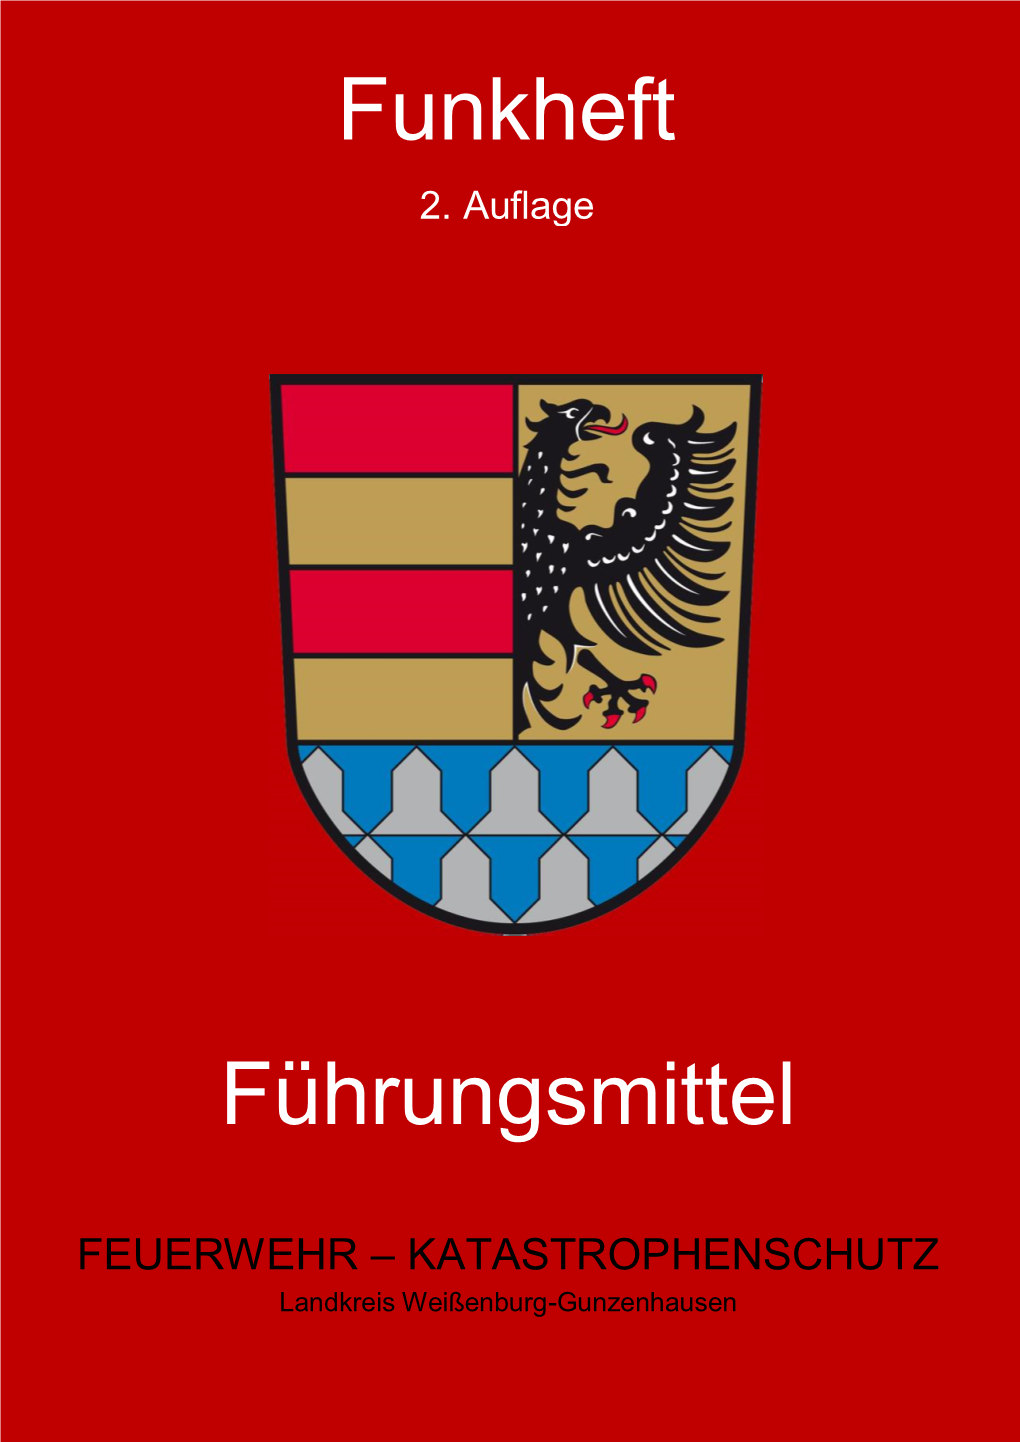 Funkheft Landkreis Weißenburg-Gunzenhausen